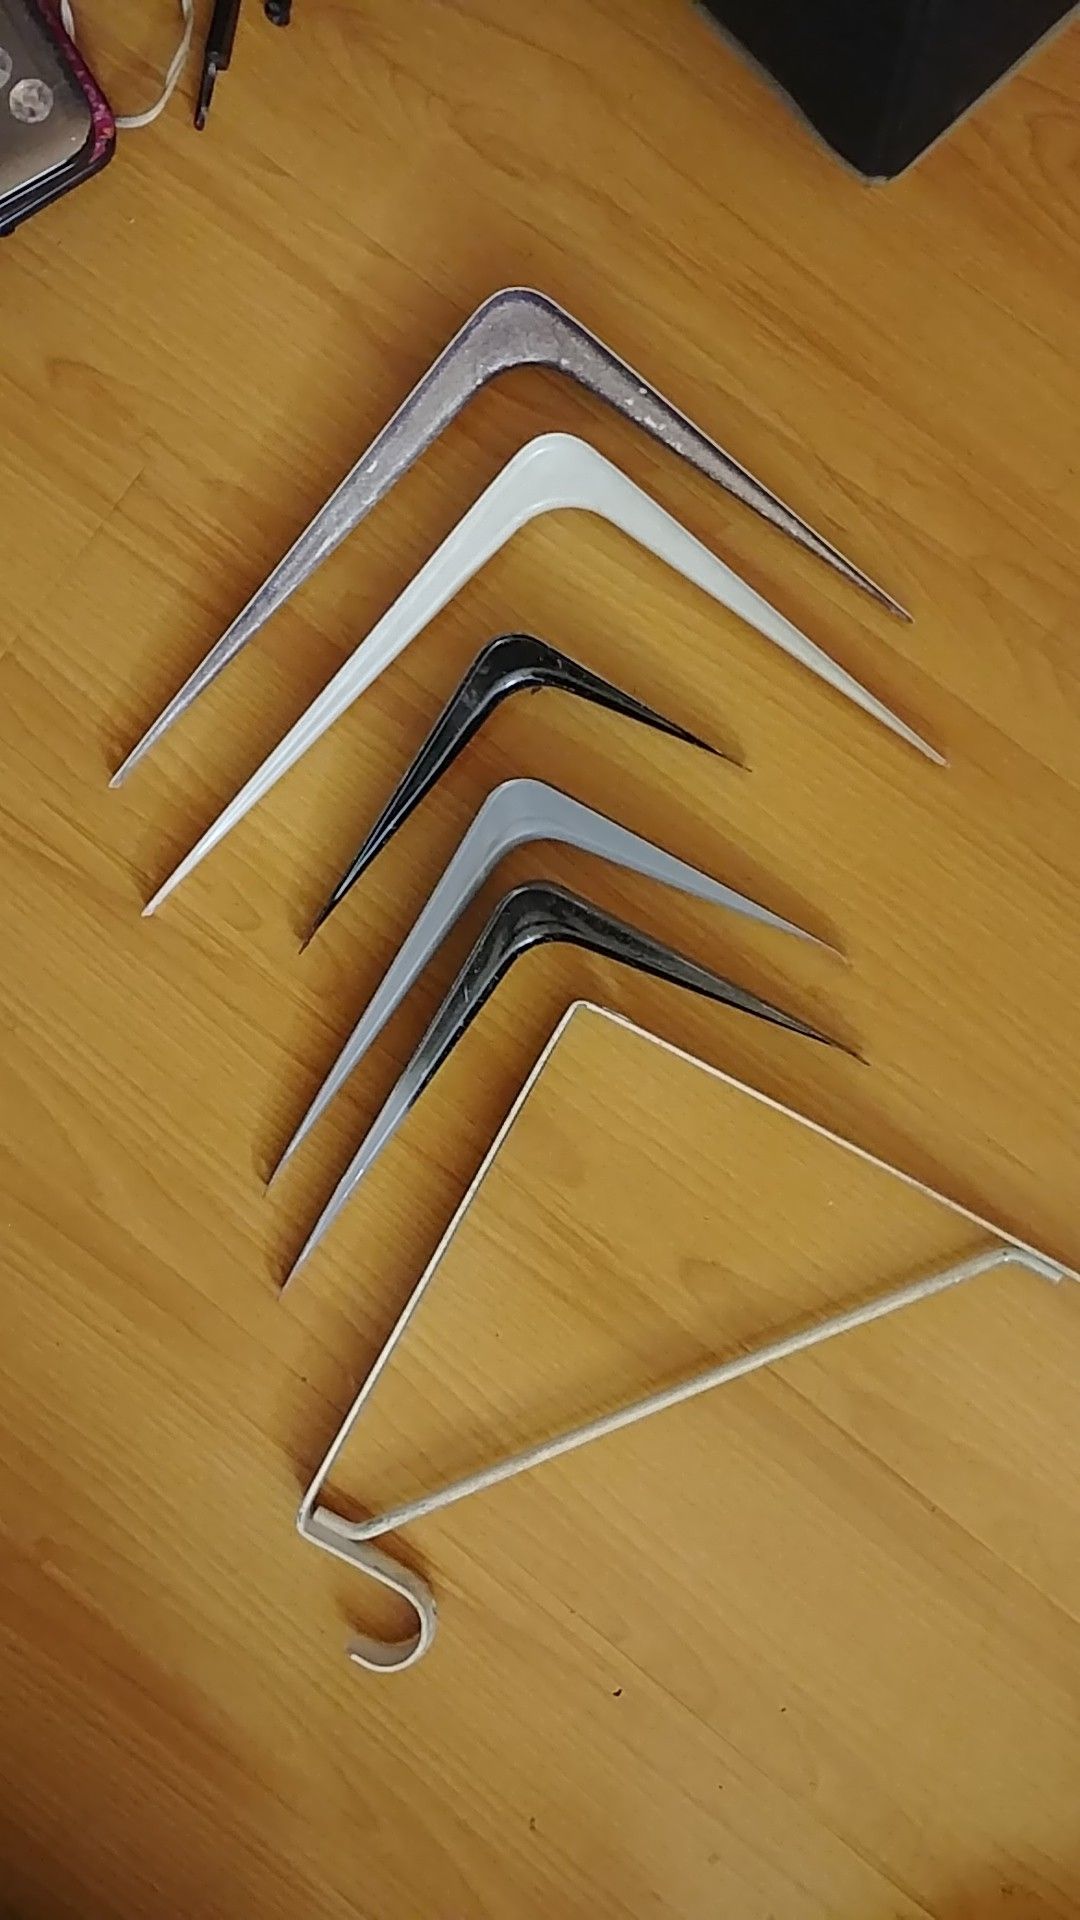 Variety of shelf brackets